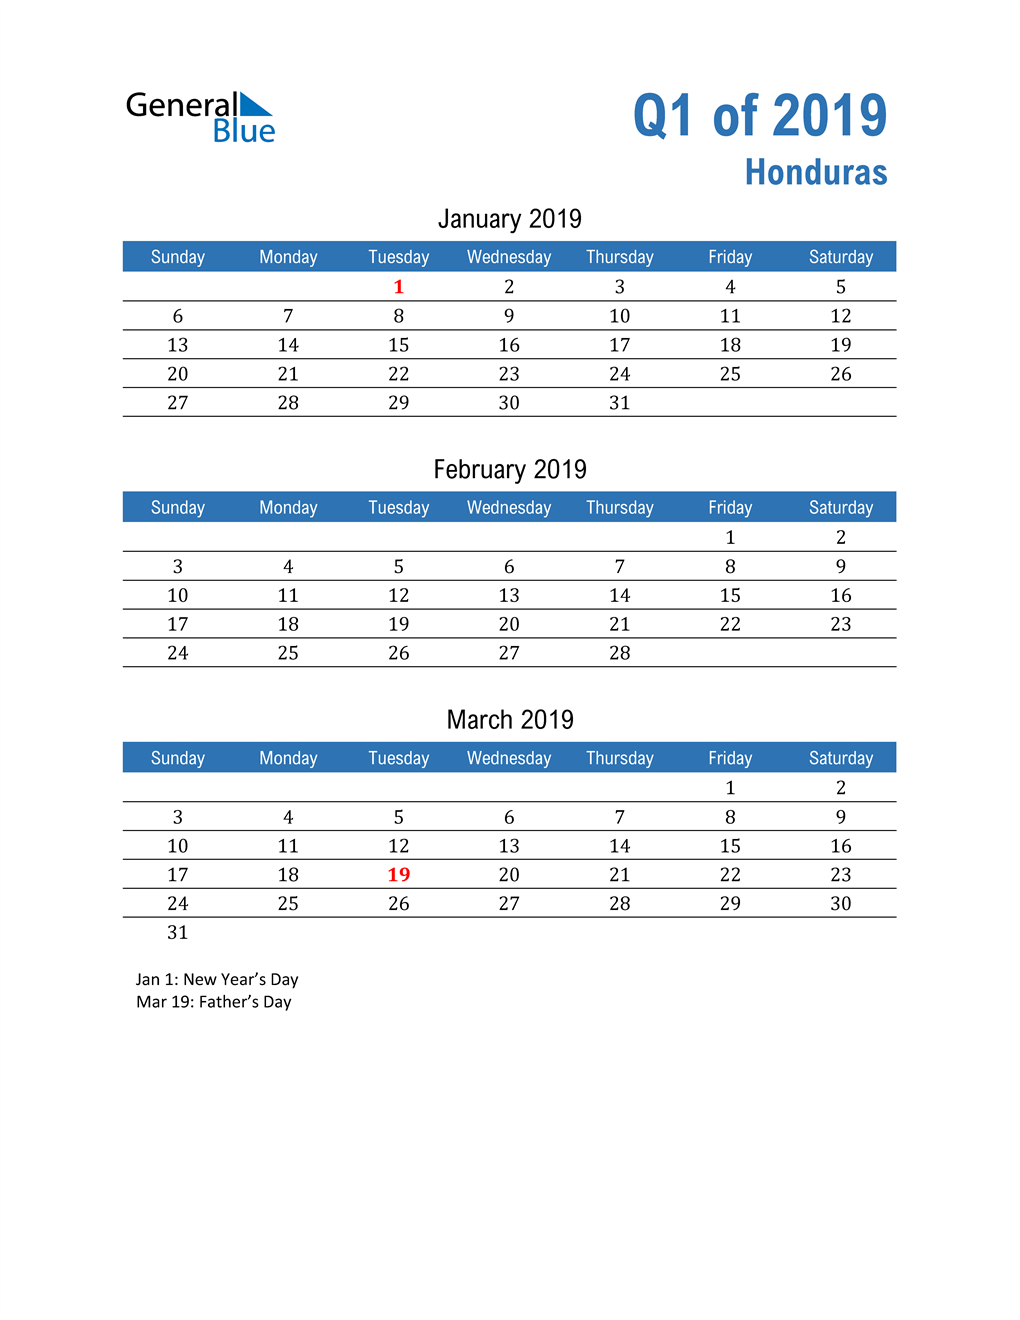  Honduras 2019 Quarterly Calendar 